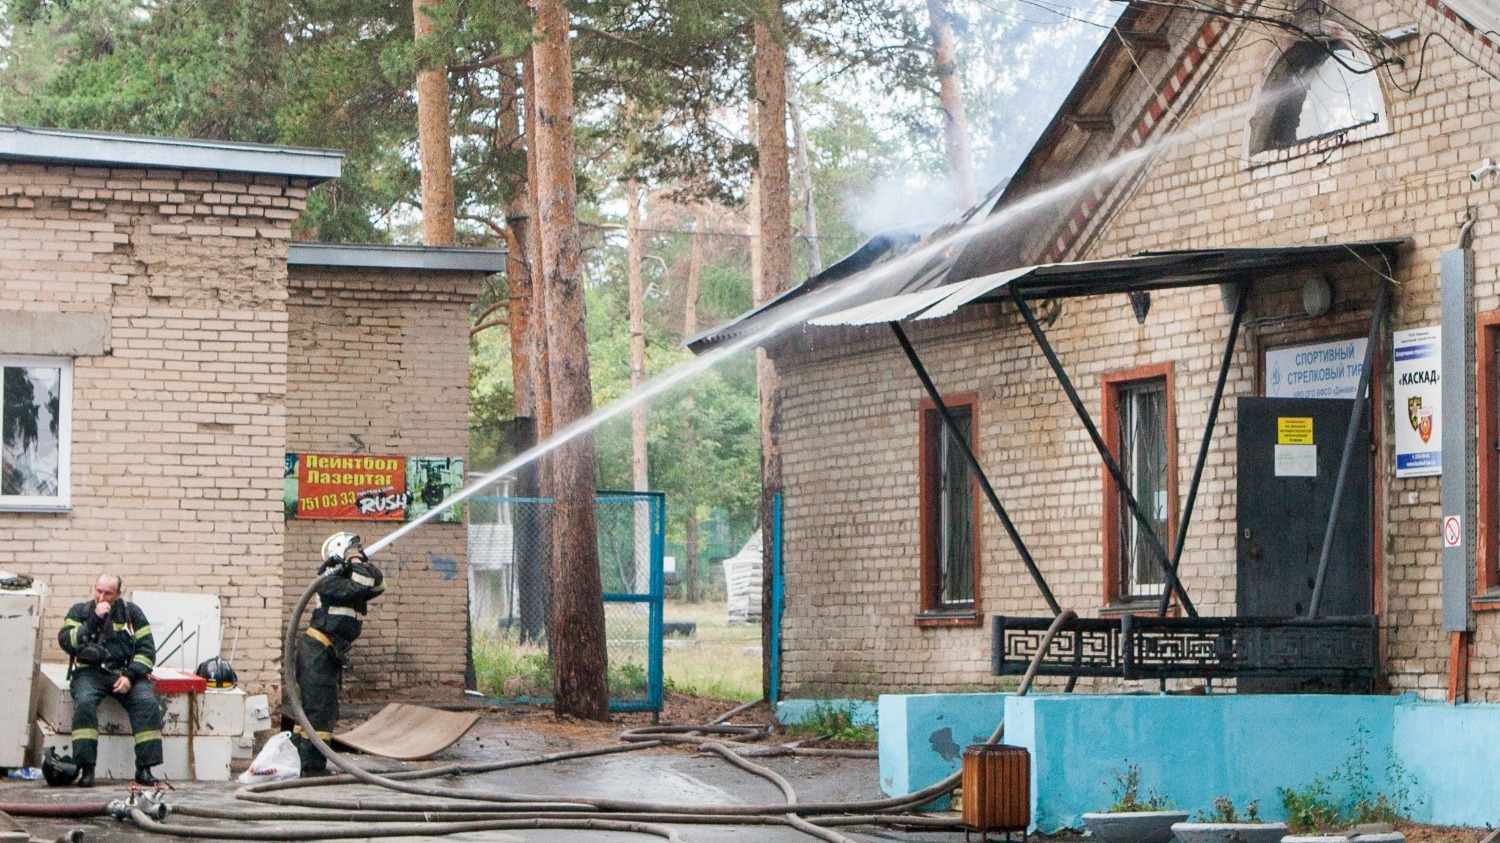 Пожарные работают на тушении огня 4 августа в здании на границе соснового бора Челябинска